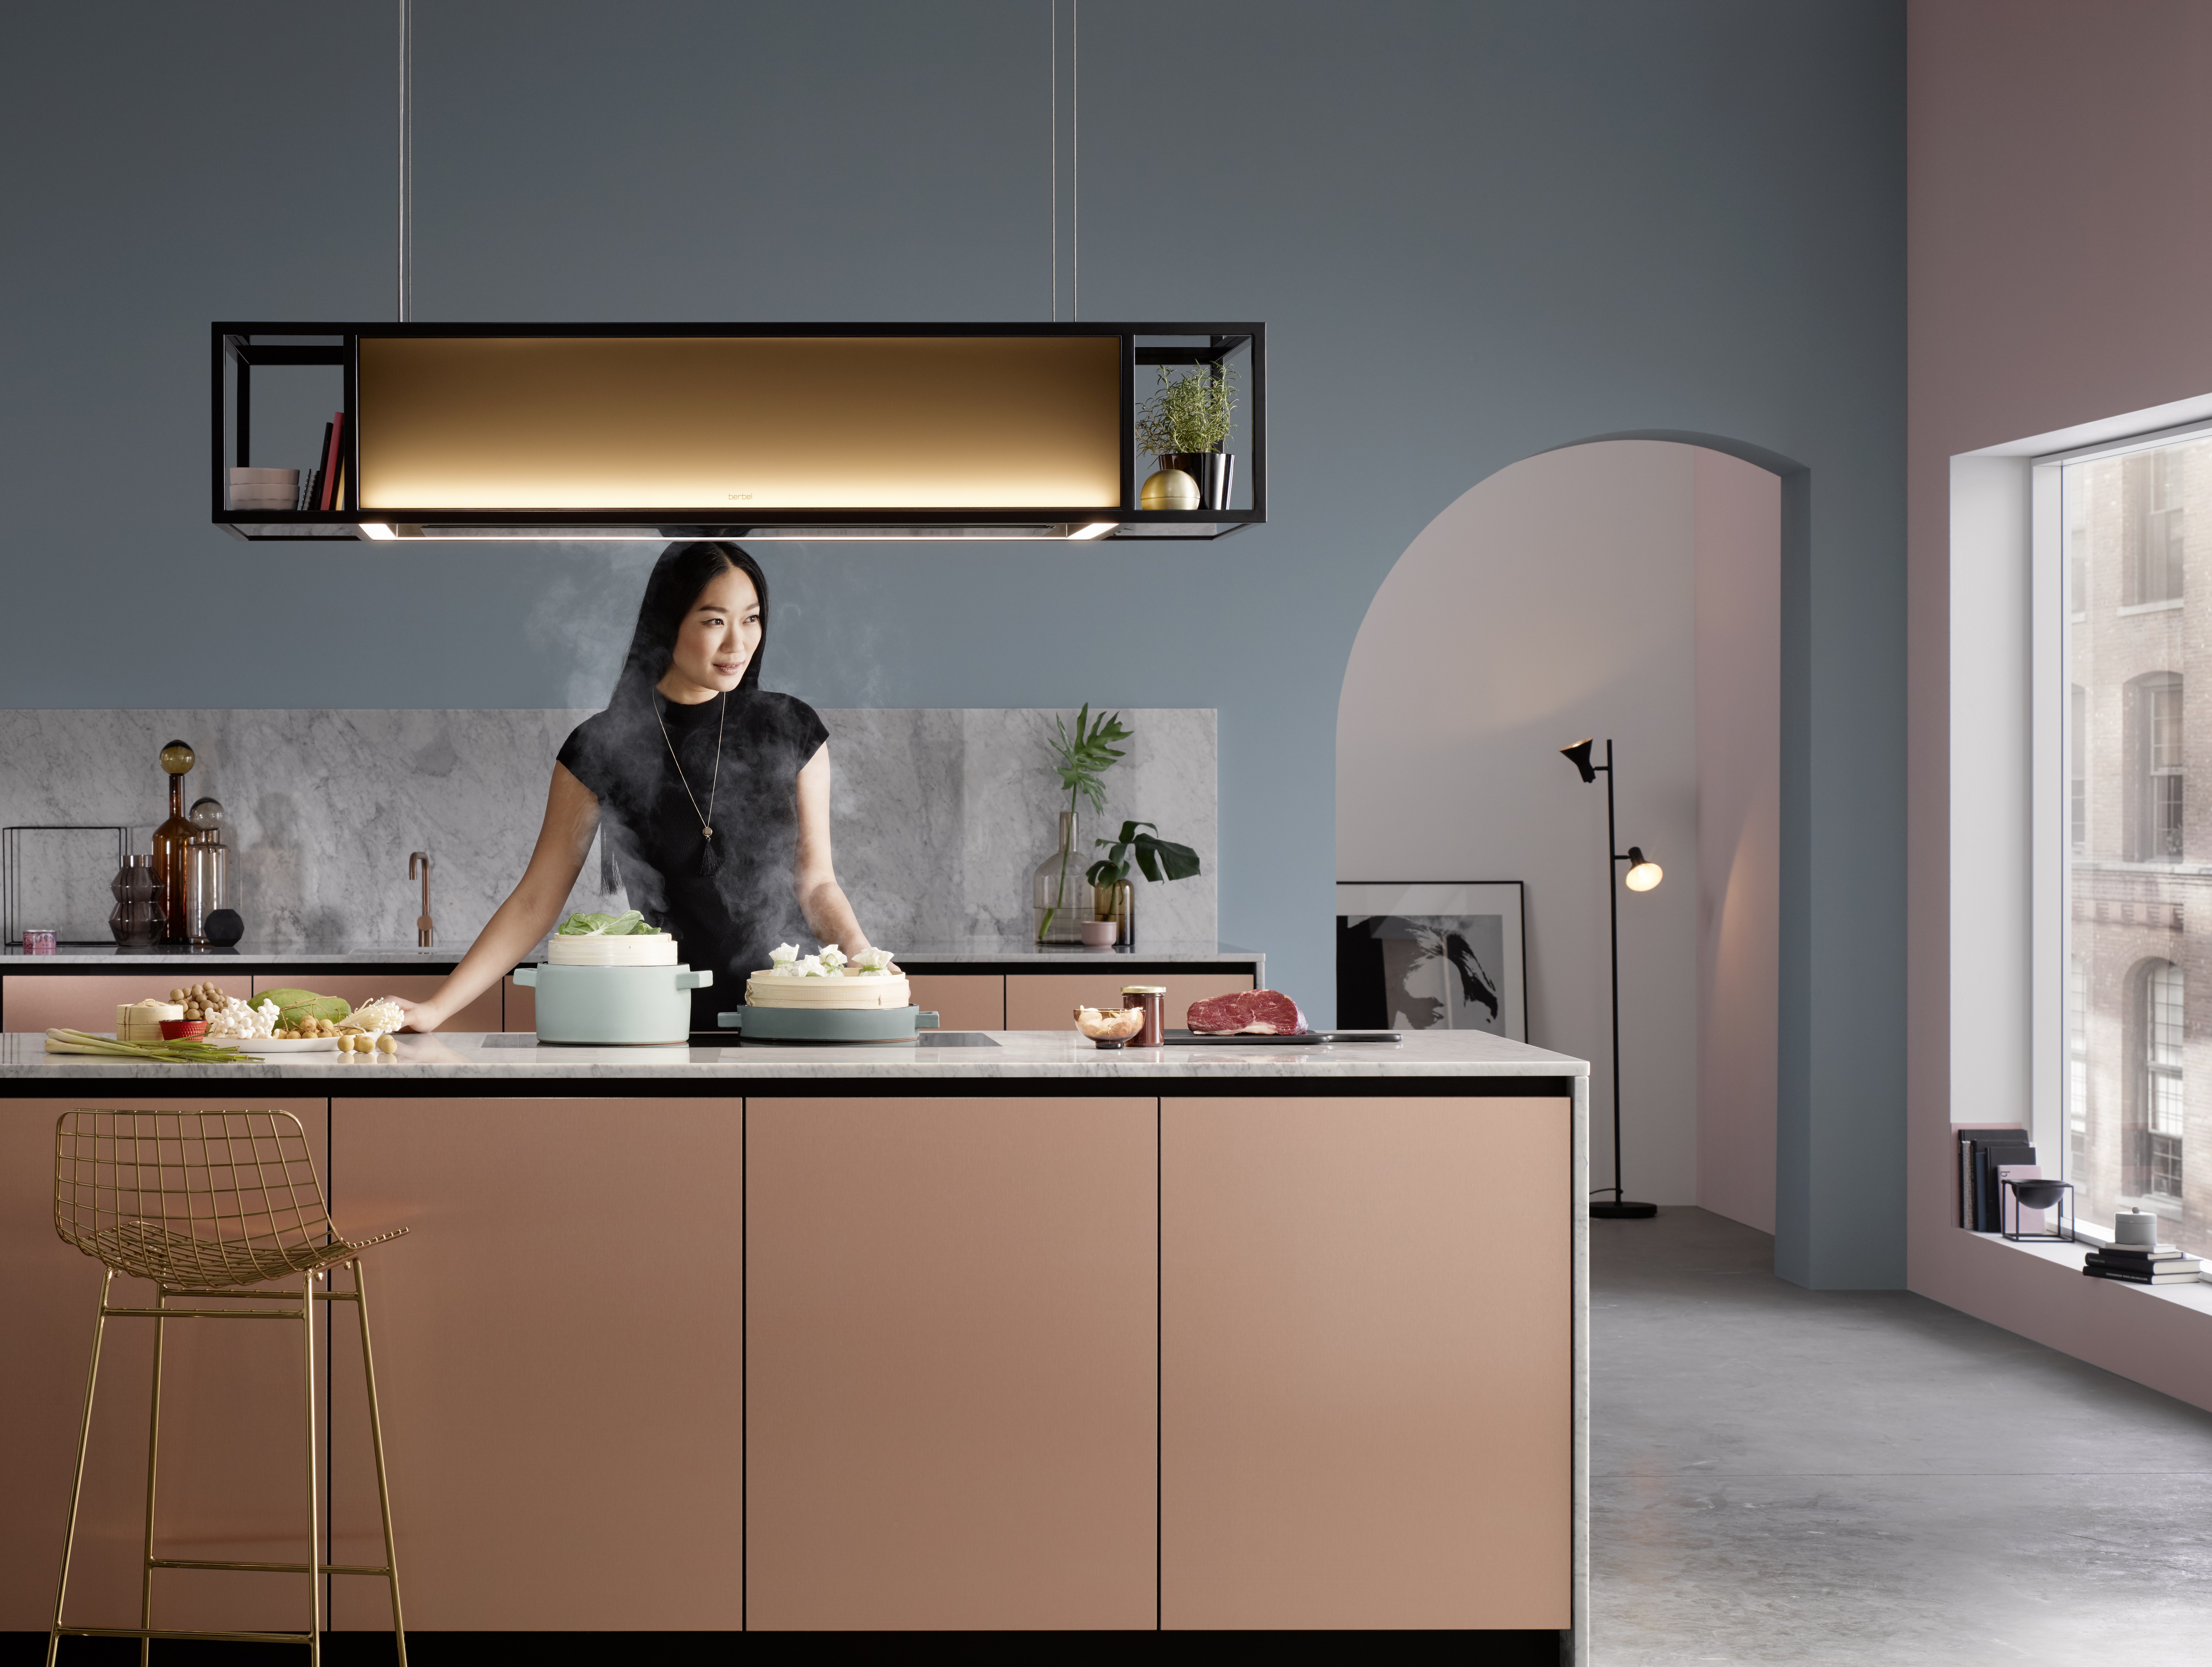 Licht/design voor de keuken